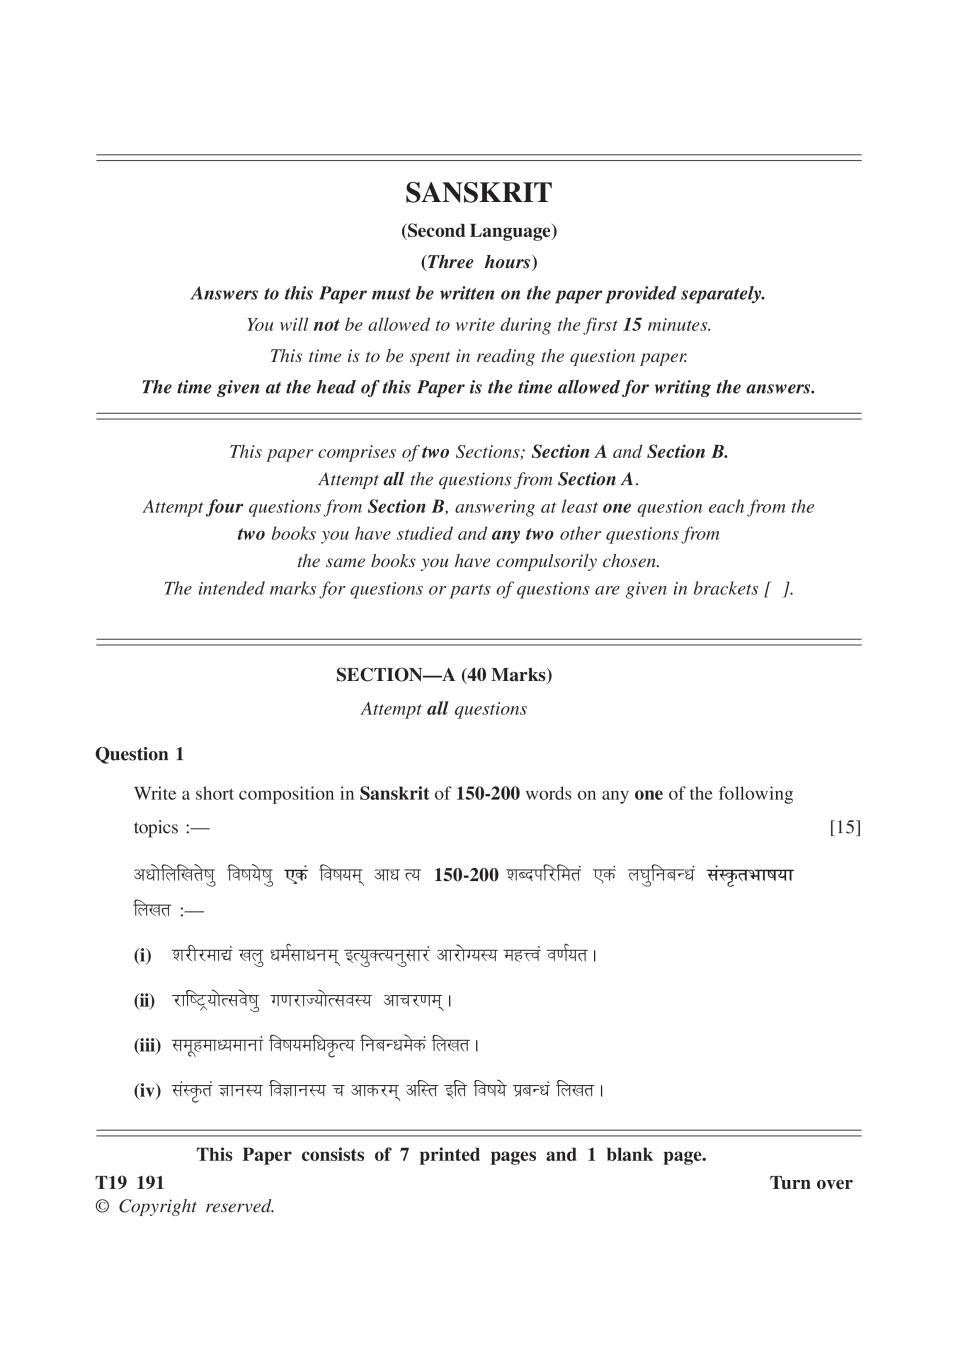 ICSE Class 10 Question Paper 2019 for Sanskrit  - Page 1